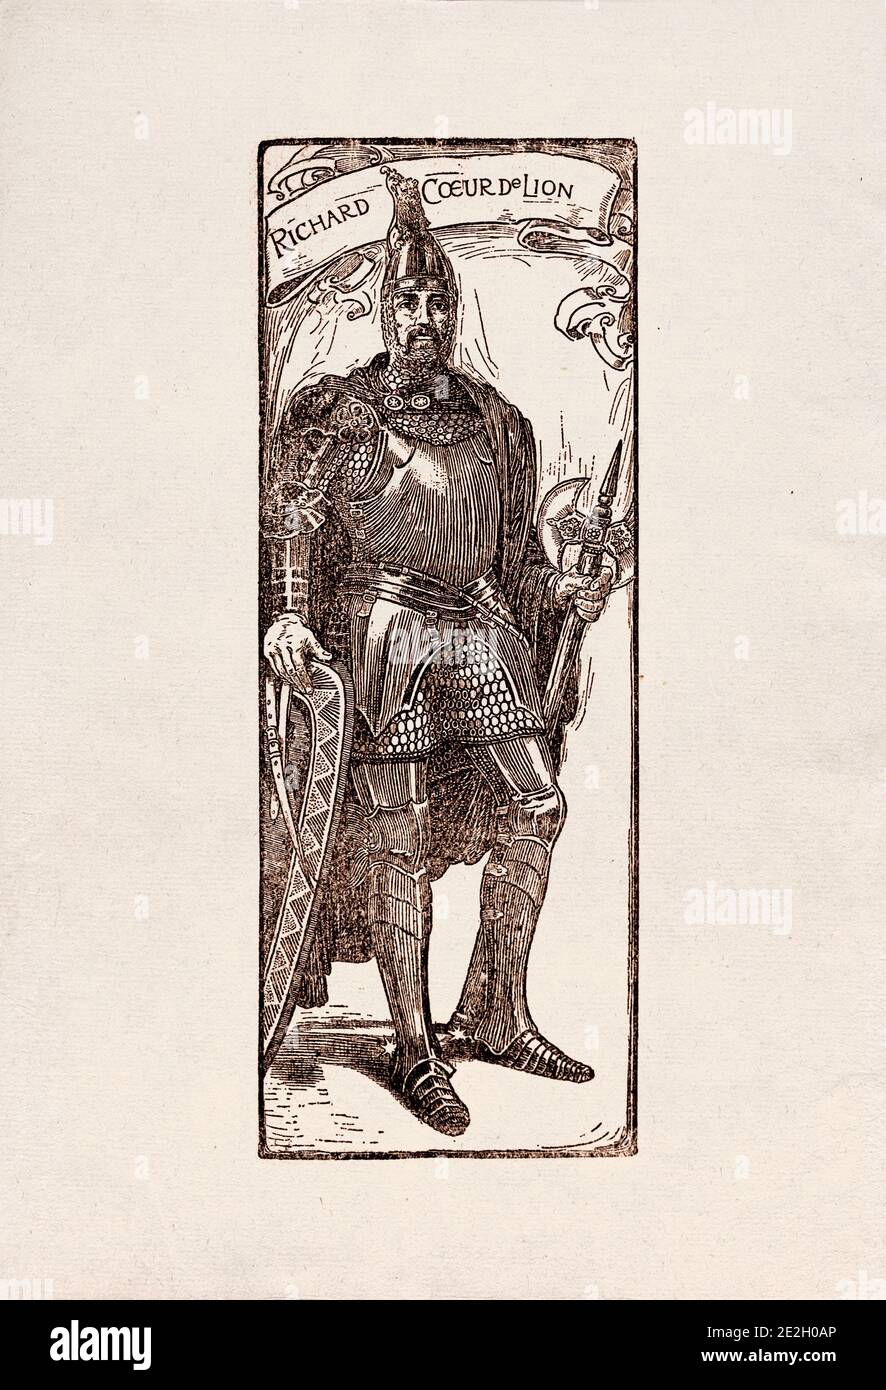 Gravure antique de personnages littéraires du folklore anglais des légendes Robin des Bois. Richard coeur de lion. Par Louis Rhead. 1912 Banque D'Images